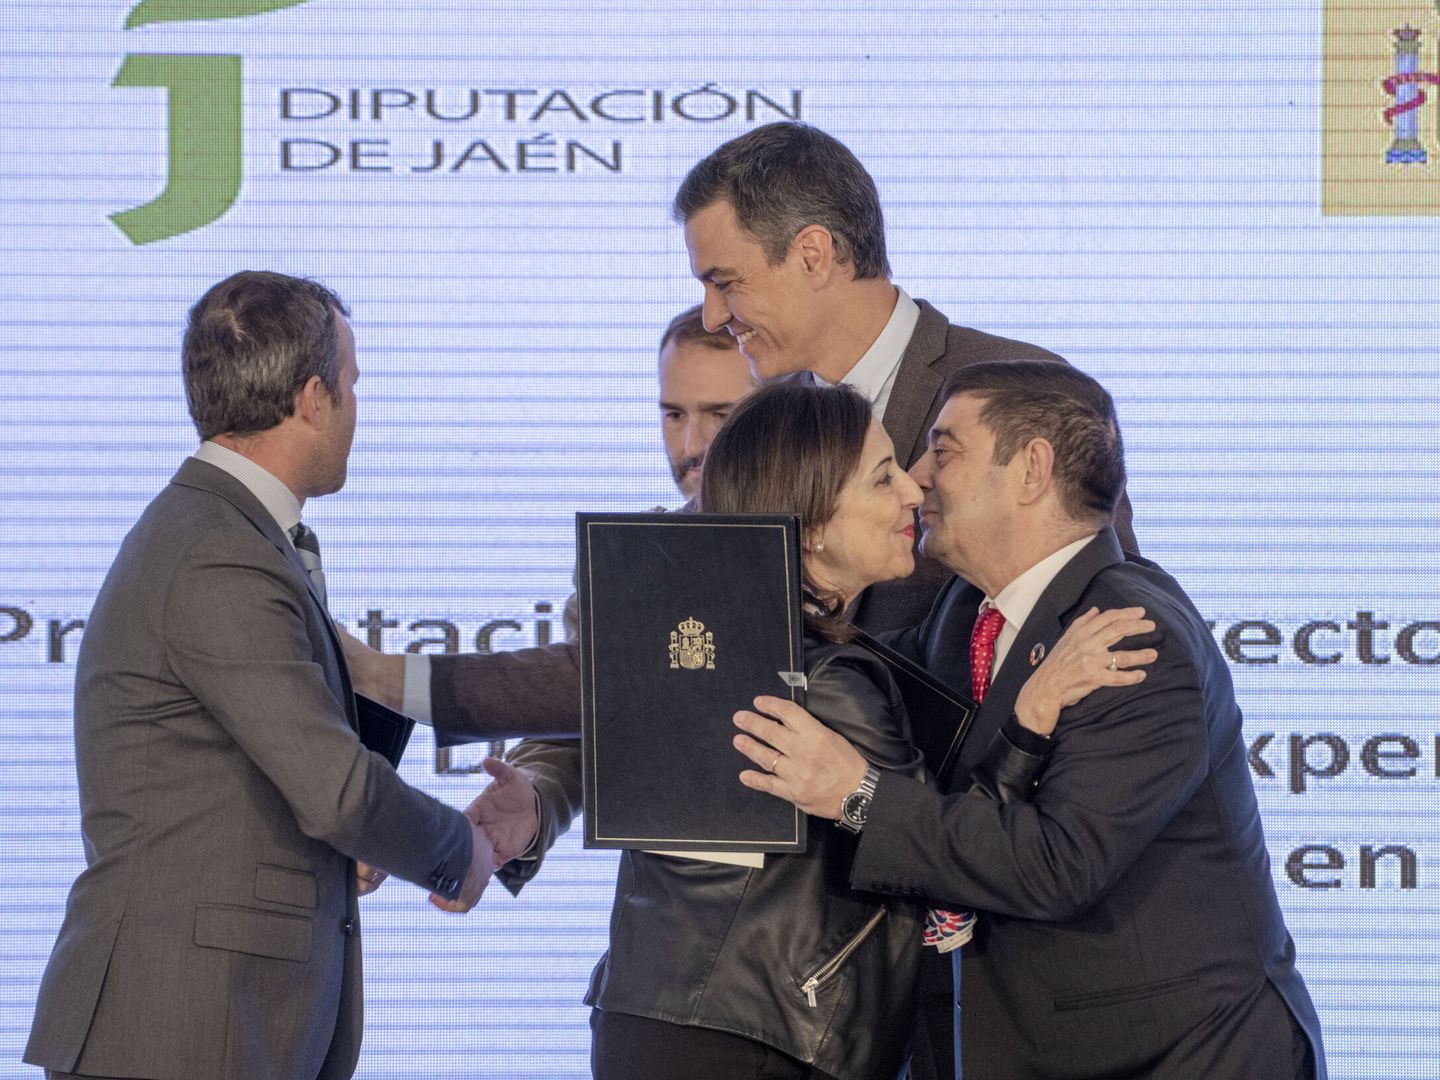 Pedro Sánchez saluda al alcalde de Jaén, Julio Millán, en presencia de Margarita Robles y Paco Reyes, presidente de la Diputación. (EFE/José Manuel Pedrosa)